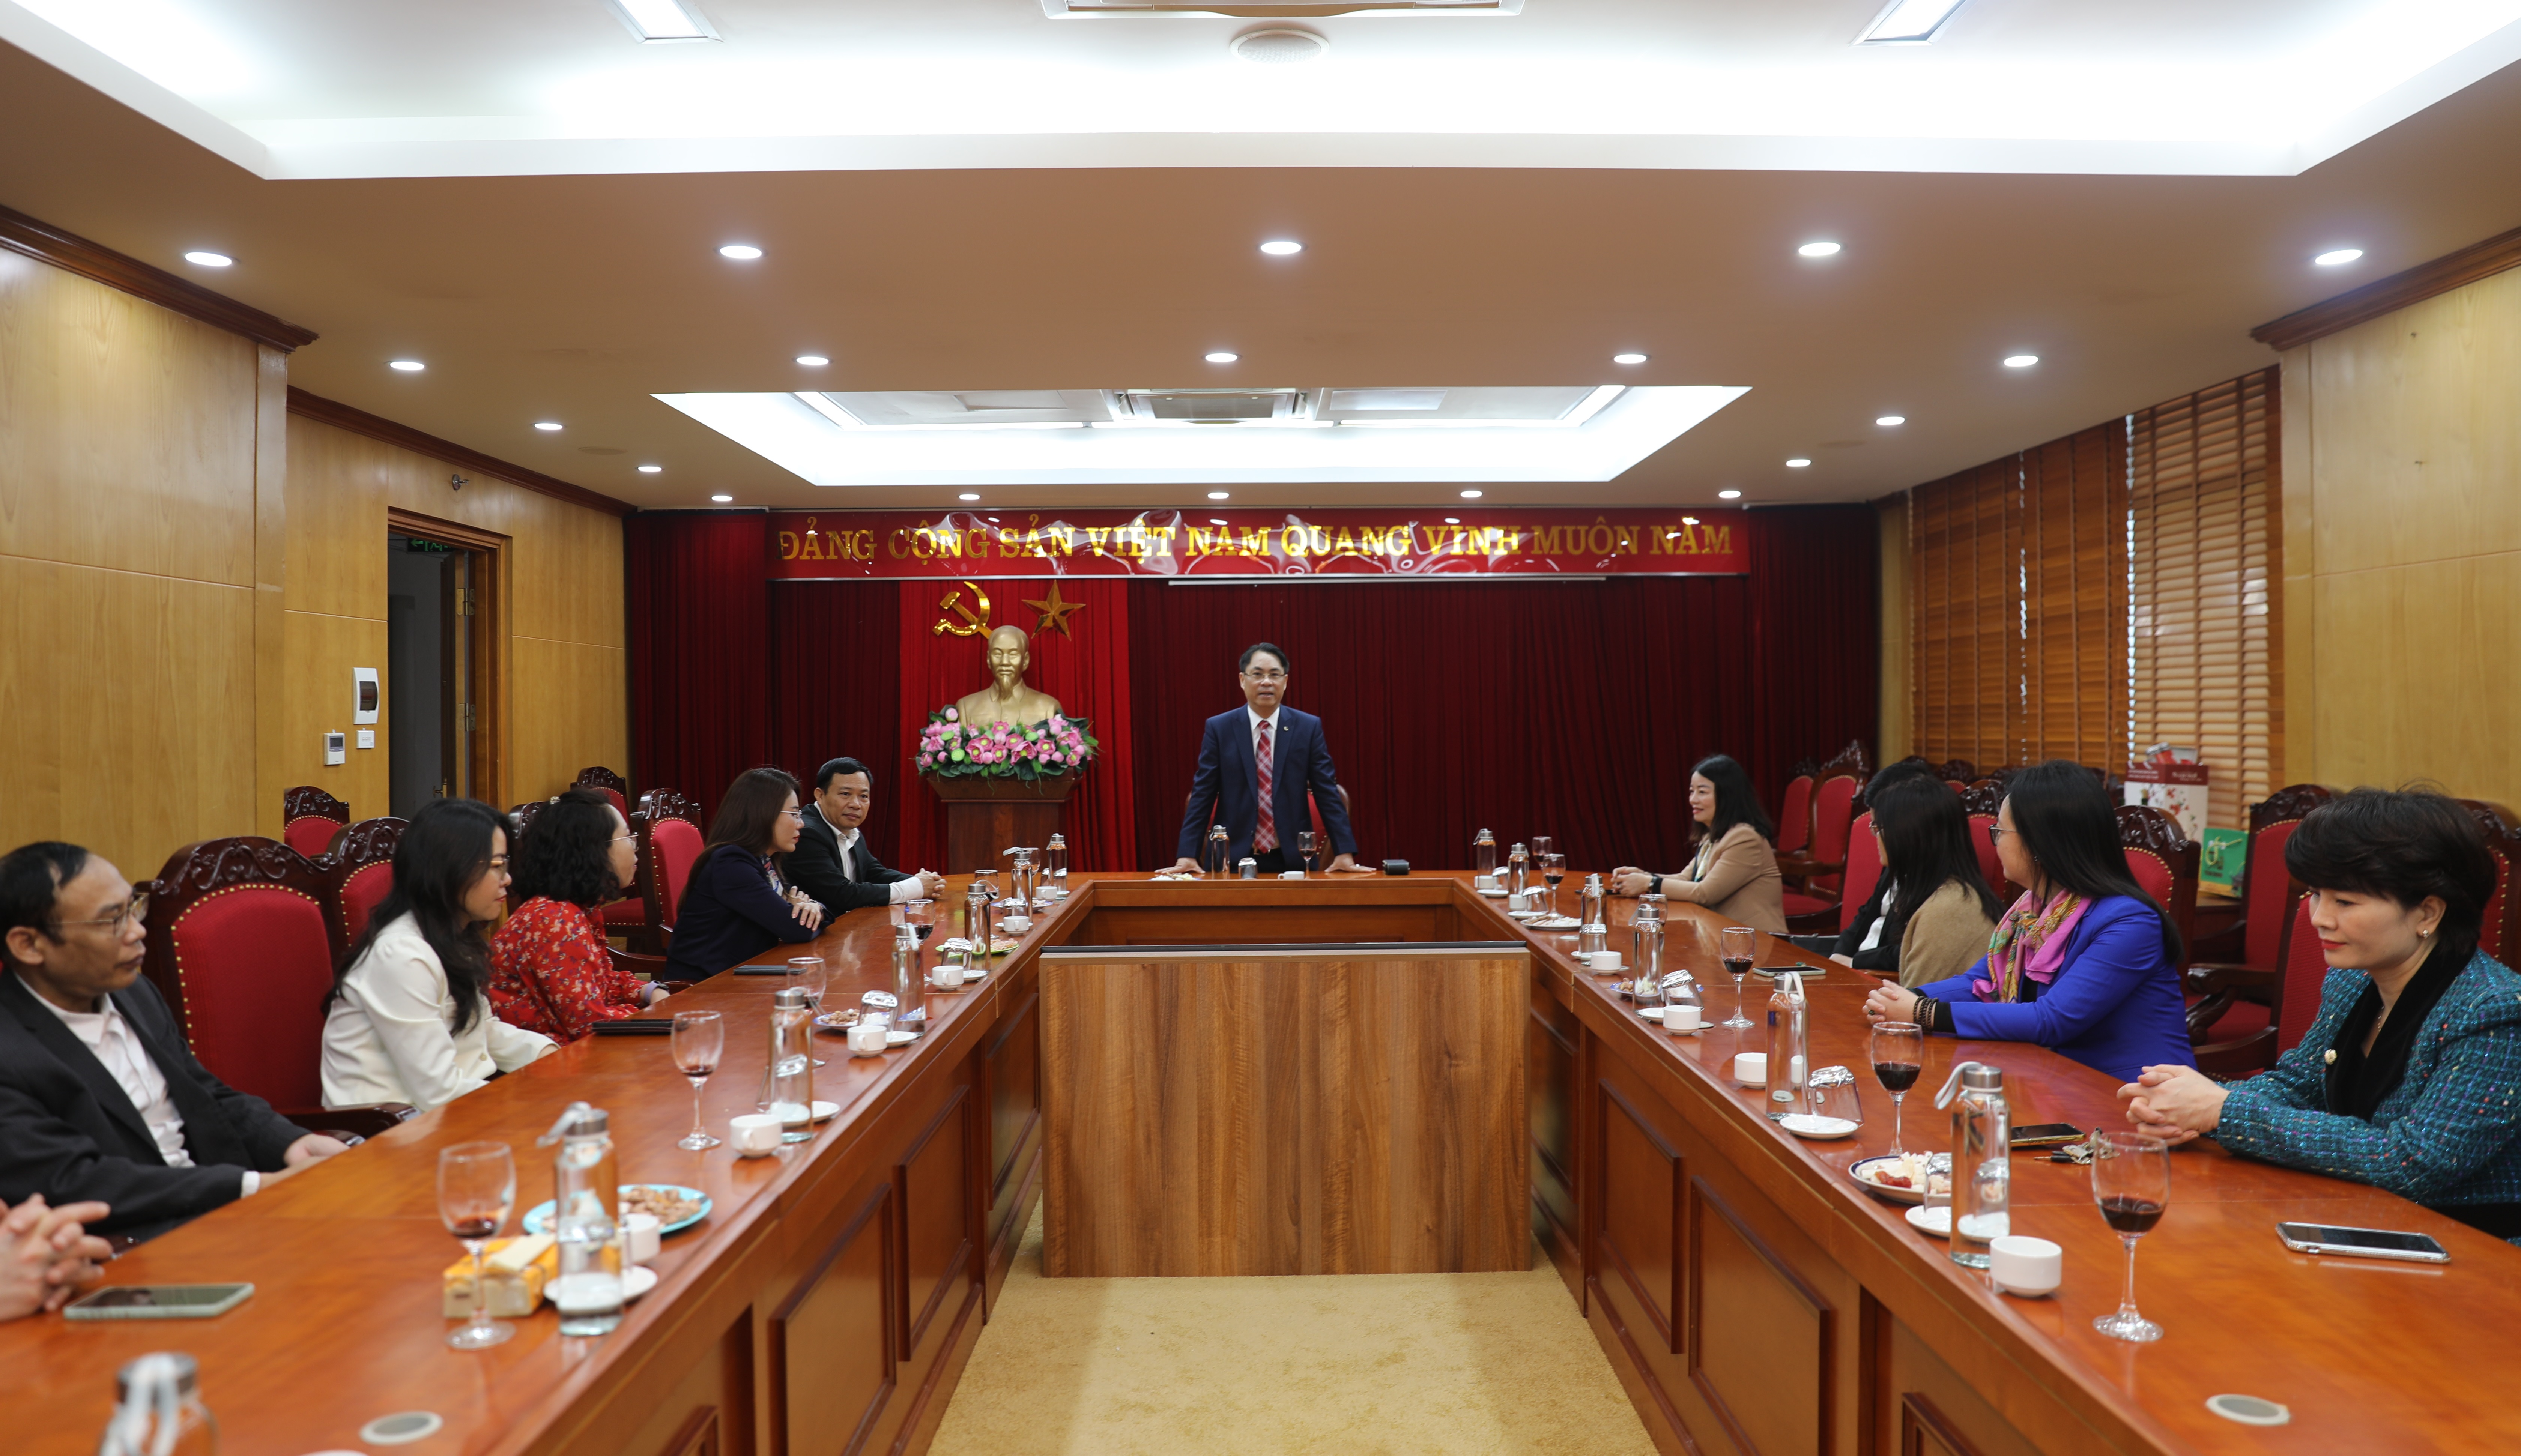 Đ/c Phan Thăng An thăm, chúc Tết Tạp chí Xây dựng Đảng và Vụ Cơ sở đảng, đảng viên.